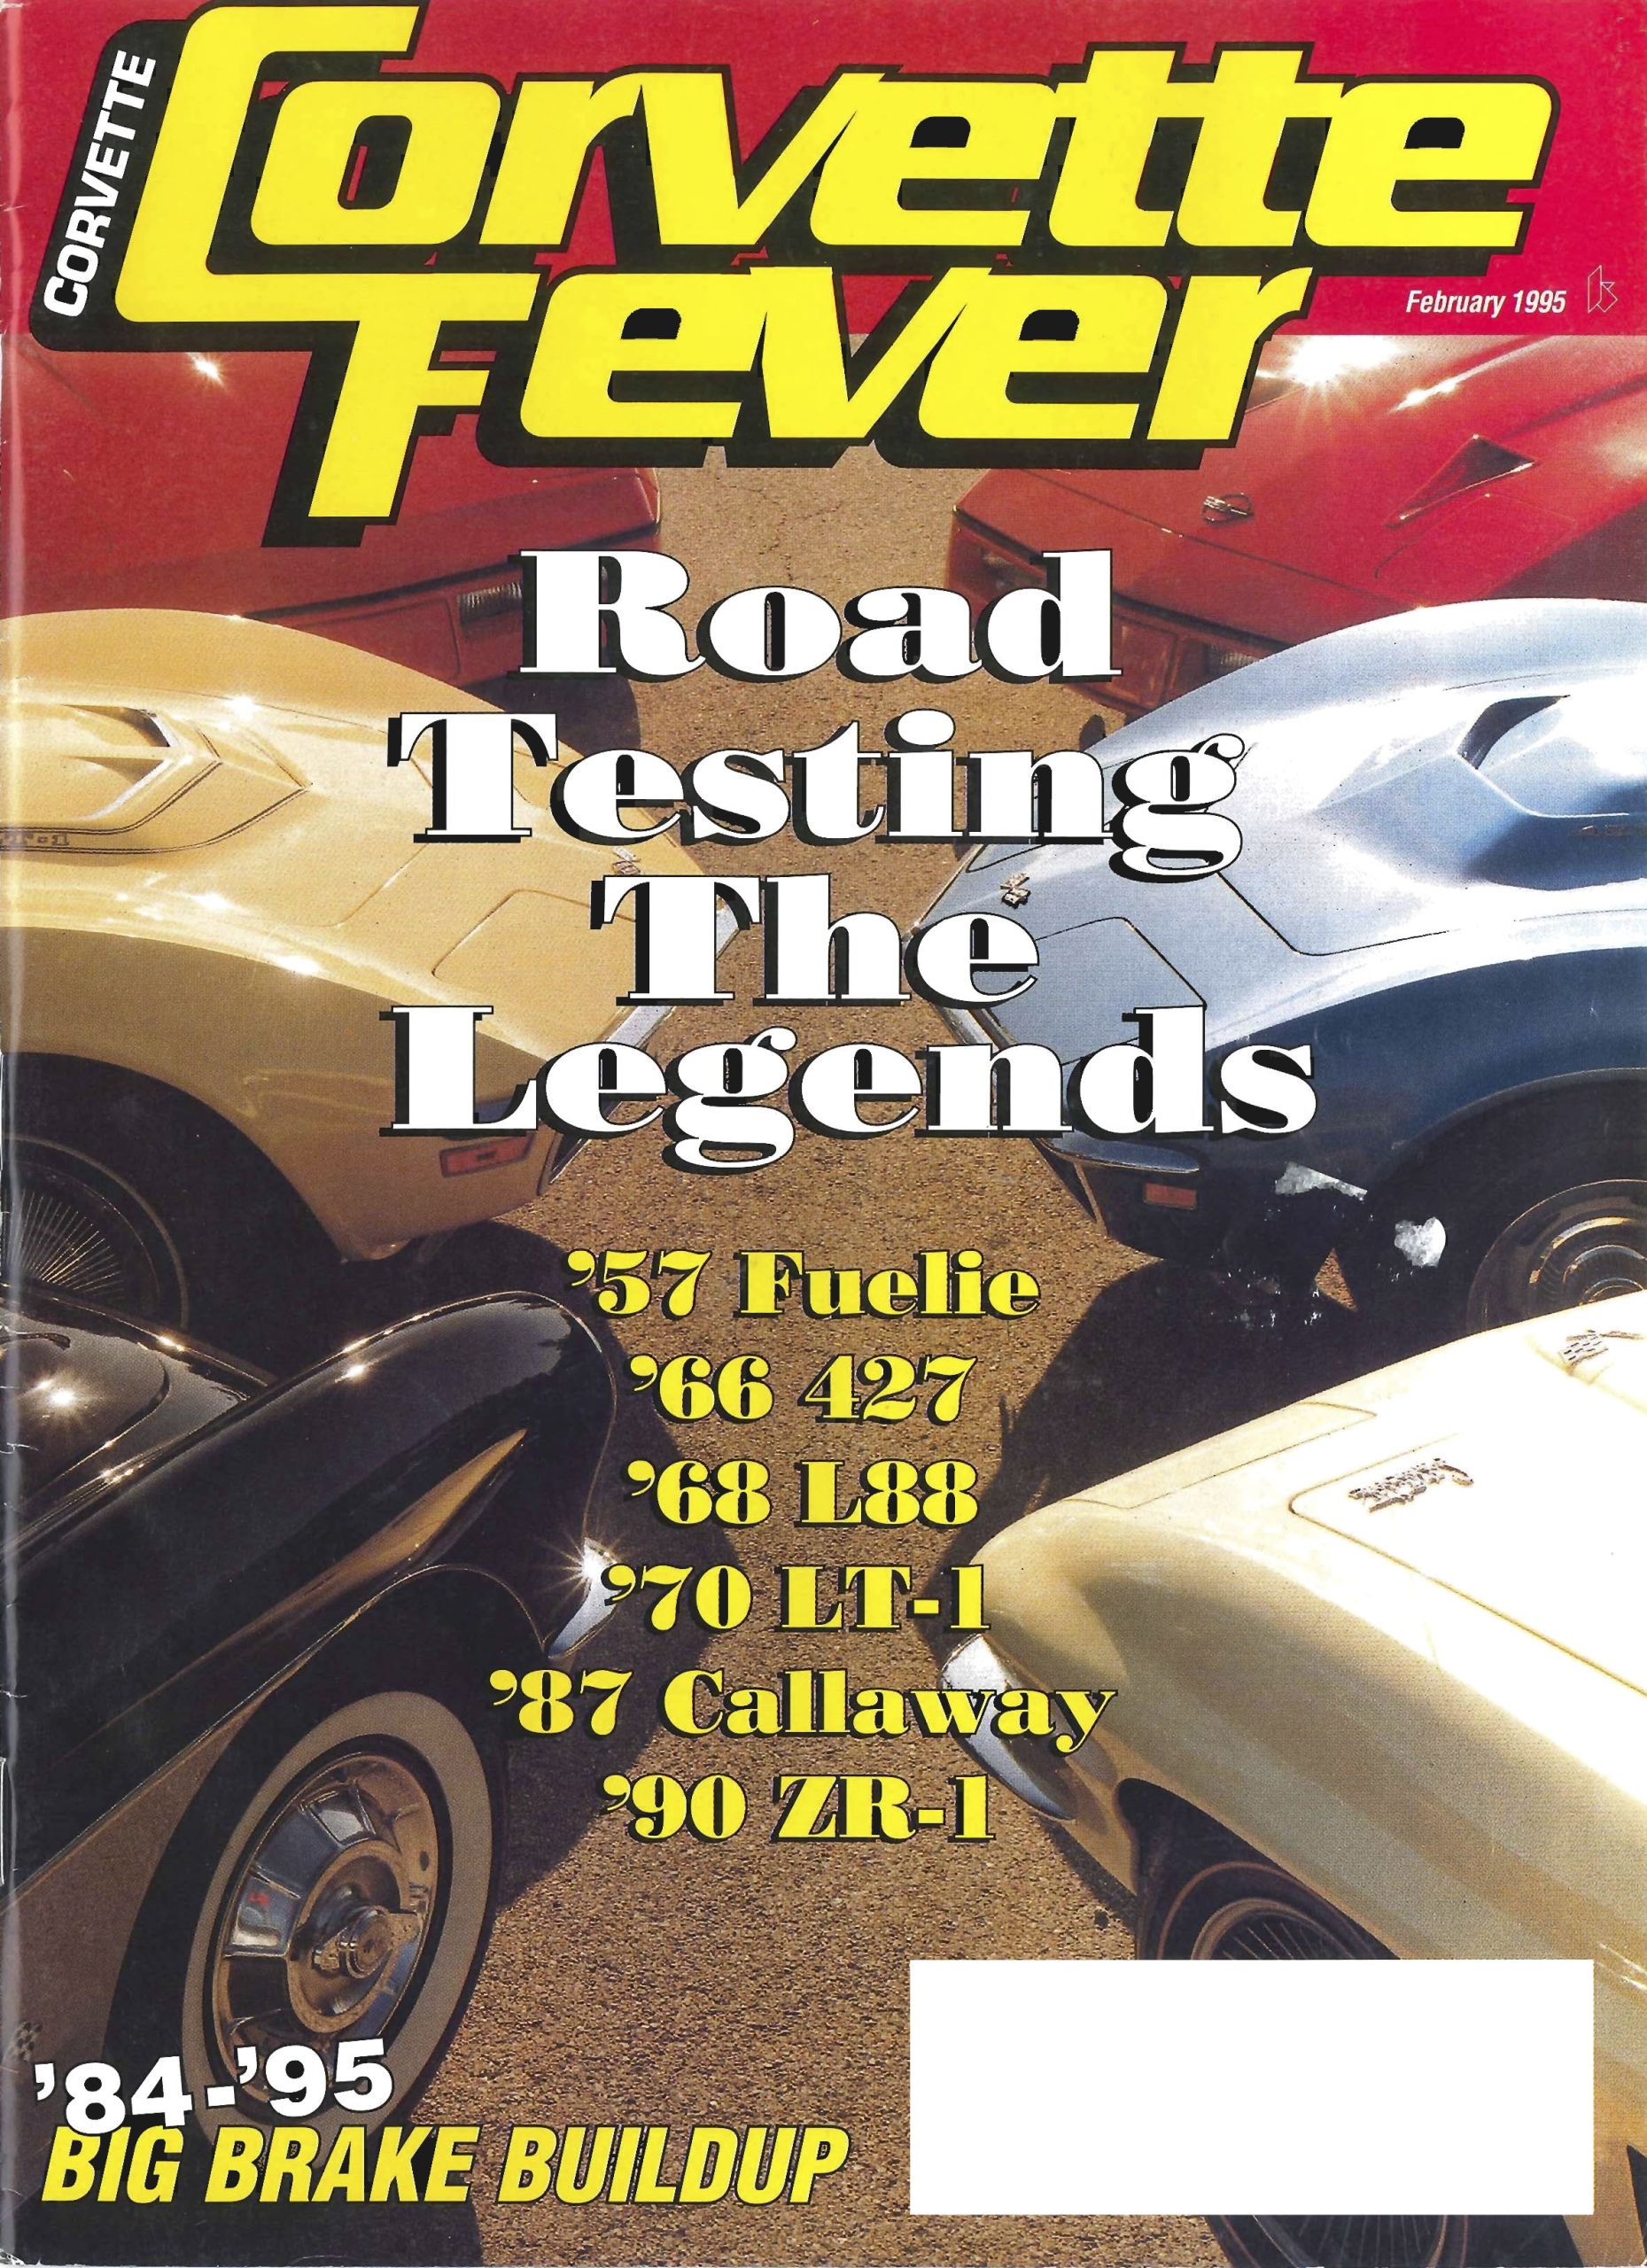 Corvette Fever February 1995